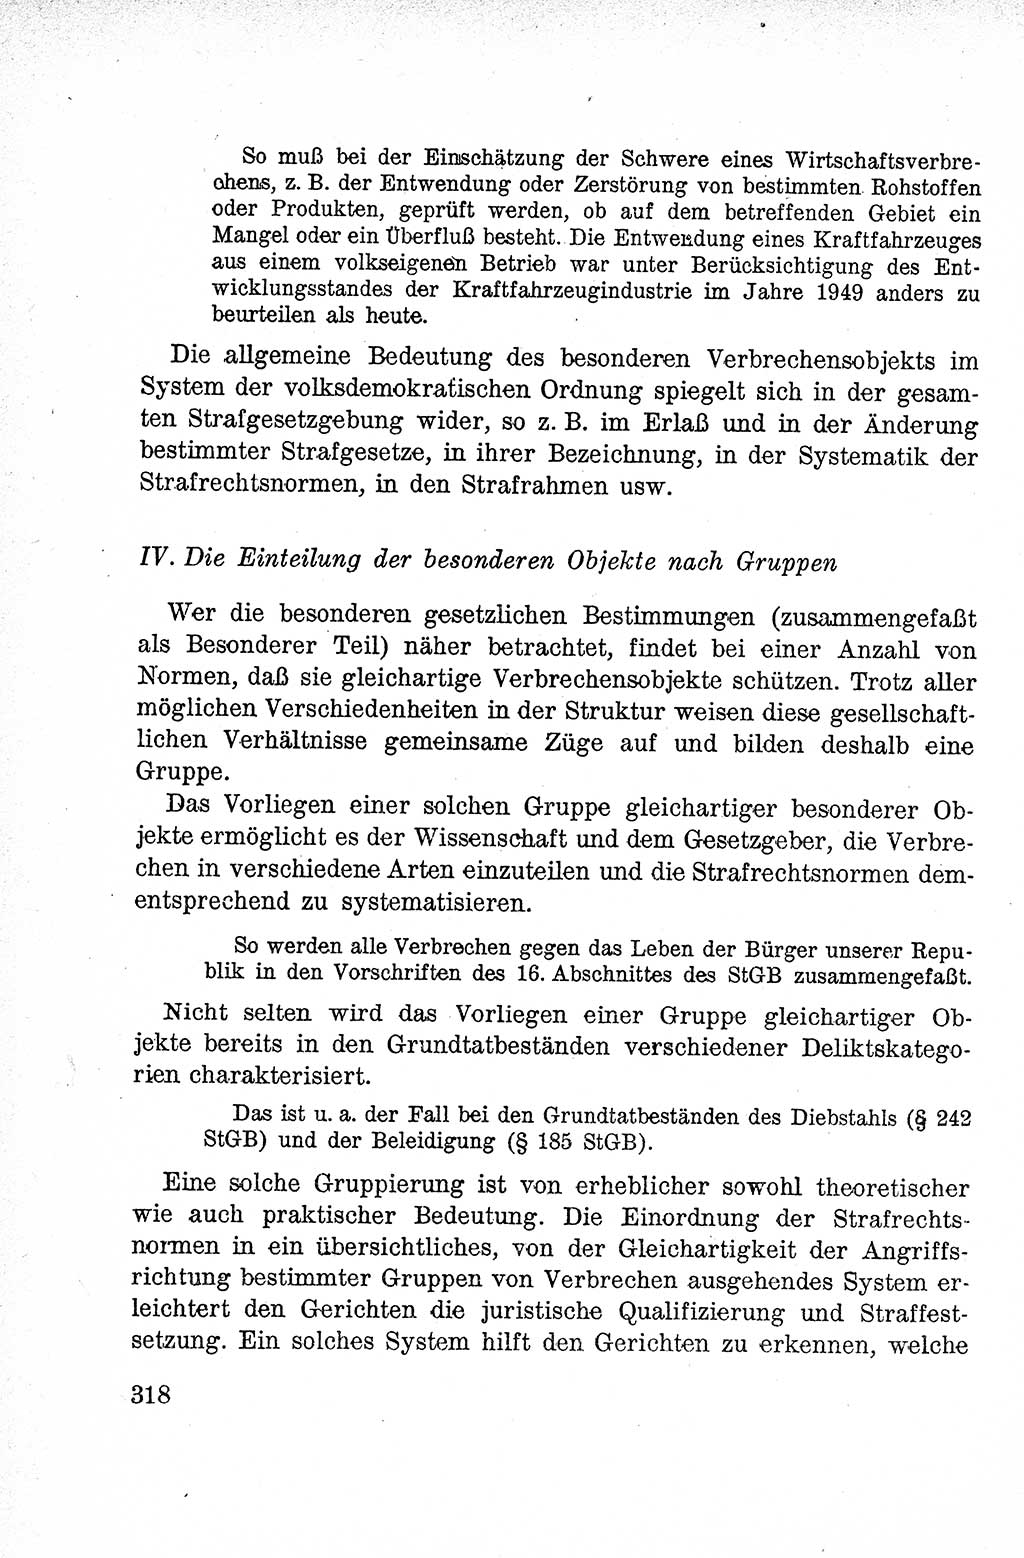 Lehrbuch des Strafrechts der Deutschen Demokratischen Republik (DDR), Allgemeiner Teil 1959, Seite 318 (Lb. Strafr. DDR AT 1959, S. 318)